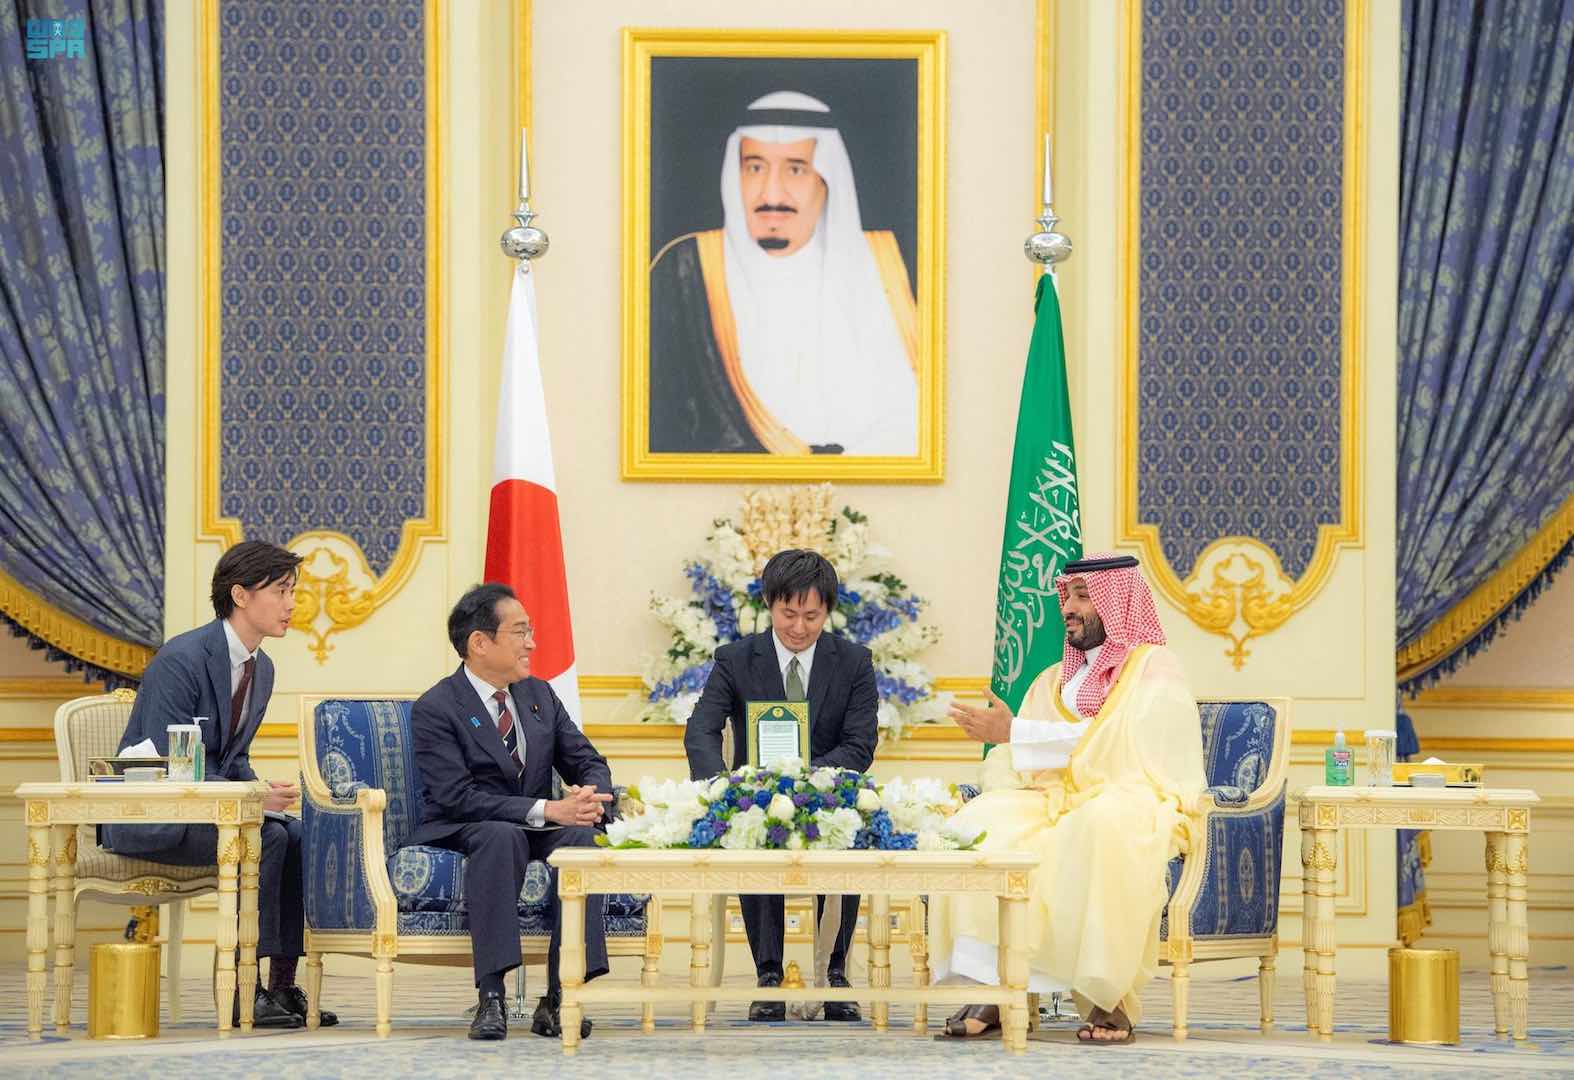 السعودية واليابان تطلقان مبادرة لتعزيز التعاون في قطاع الطاقة النظيفة